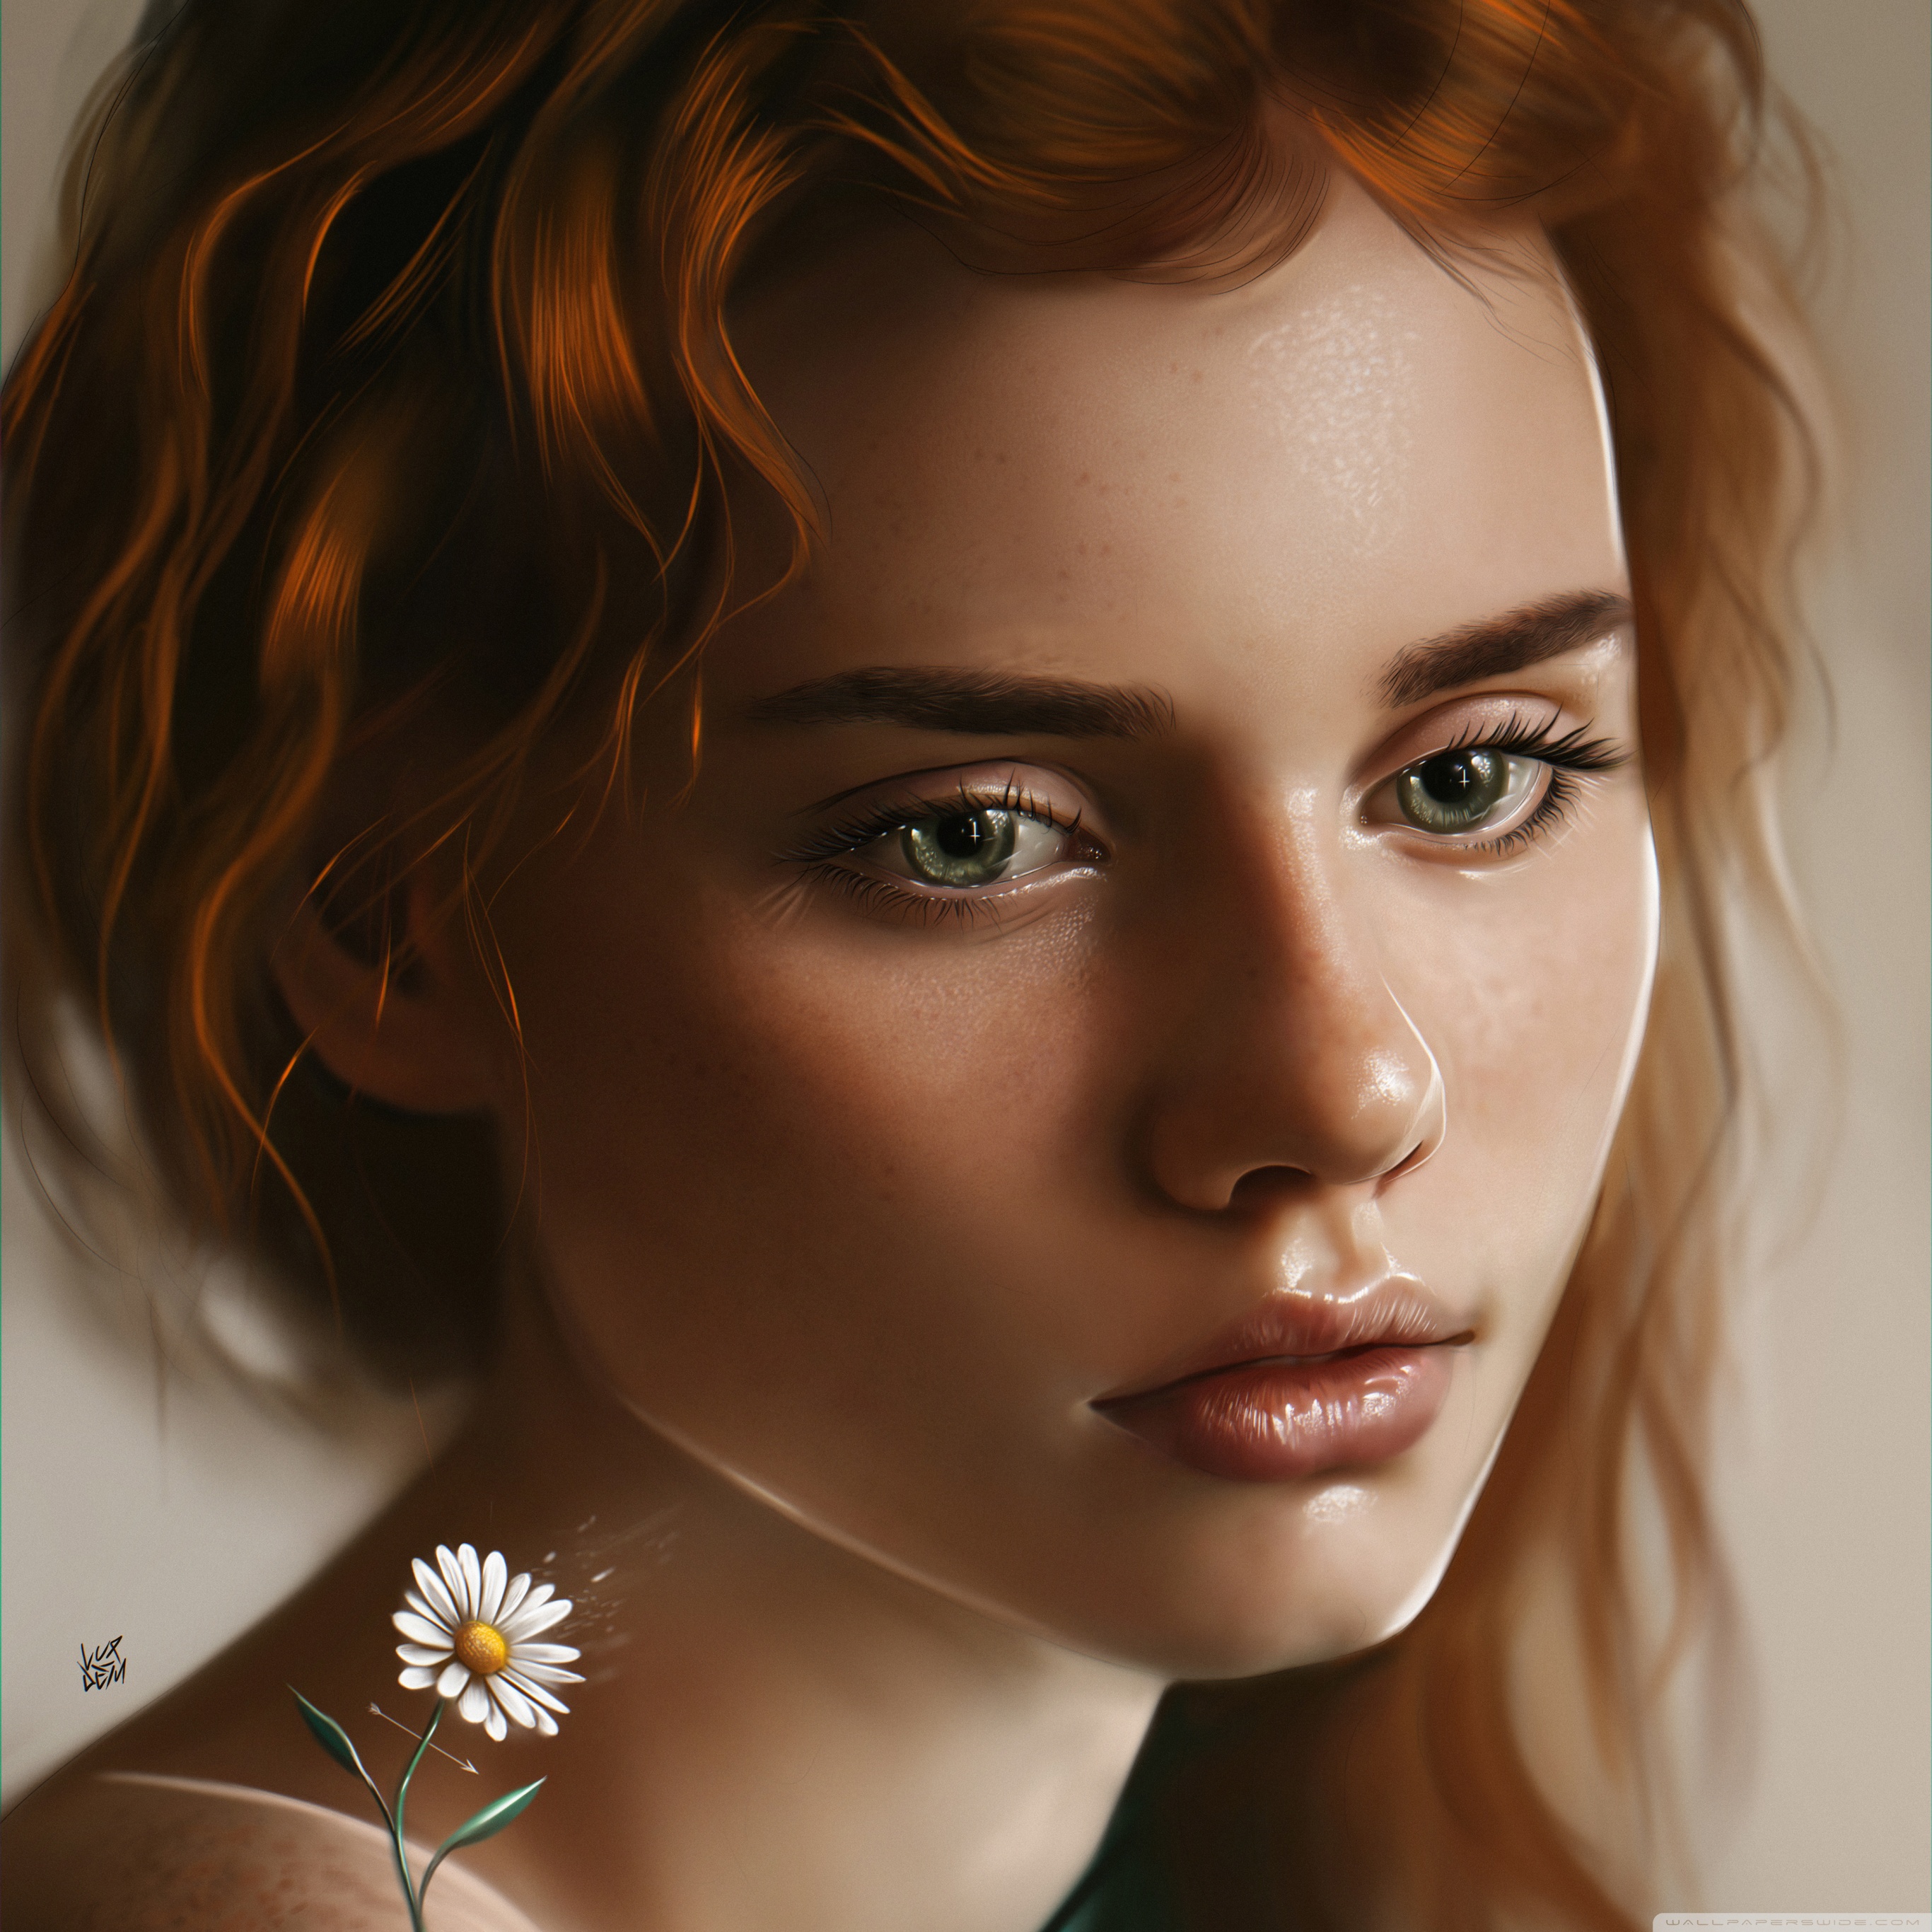 3 4 Portrait Girl - HD Wallpaper 